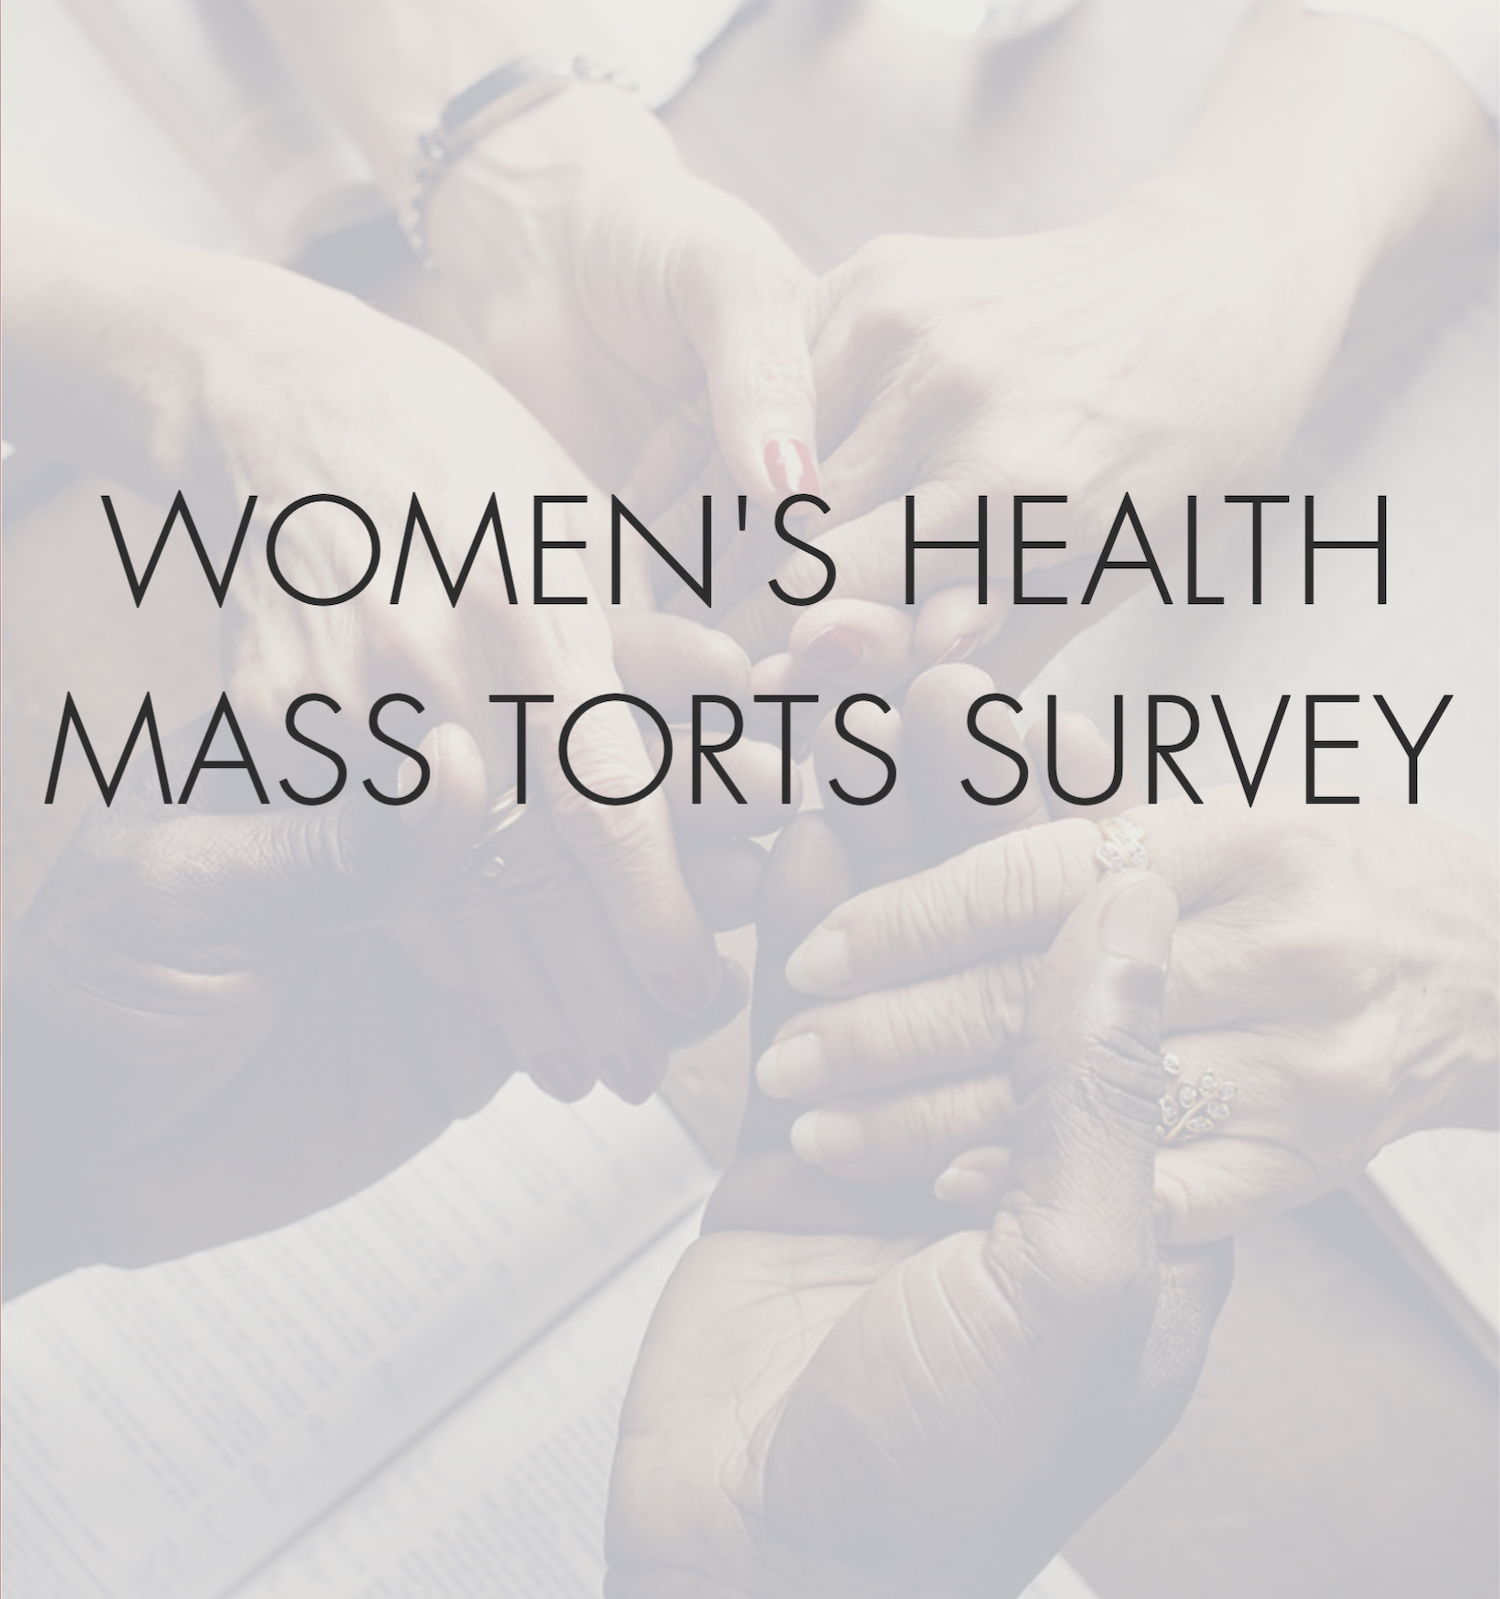 Mass Torts Survey